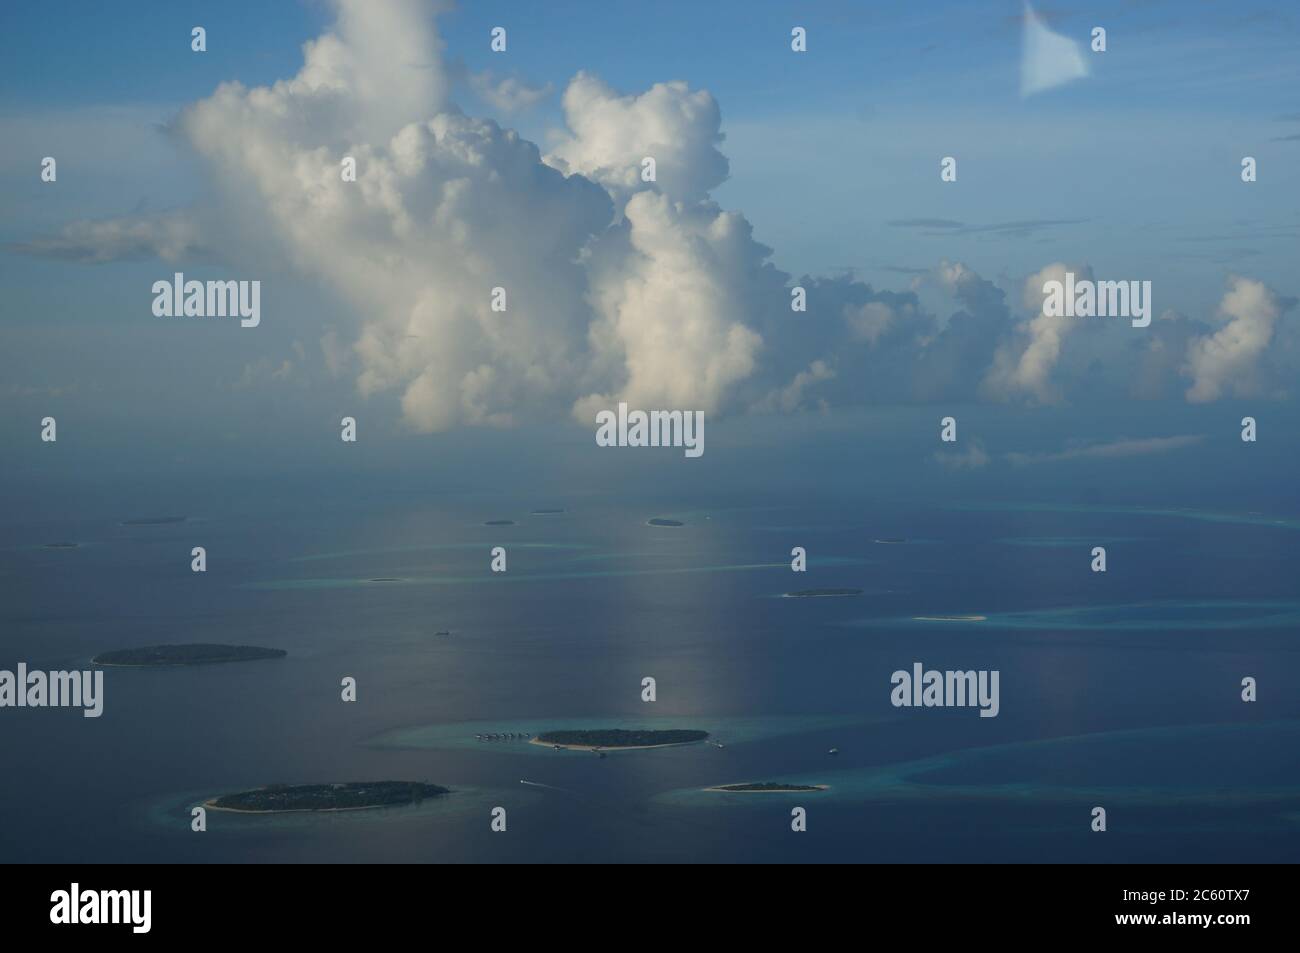 Mehrere Atoll-Inseln von den Malediven sehen aus wie Perlen des Meeres Stockfoto